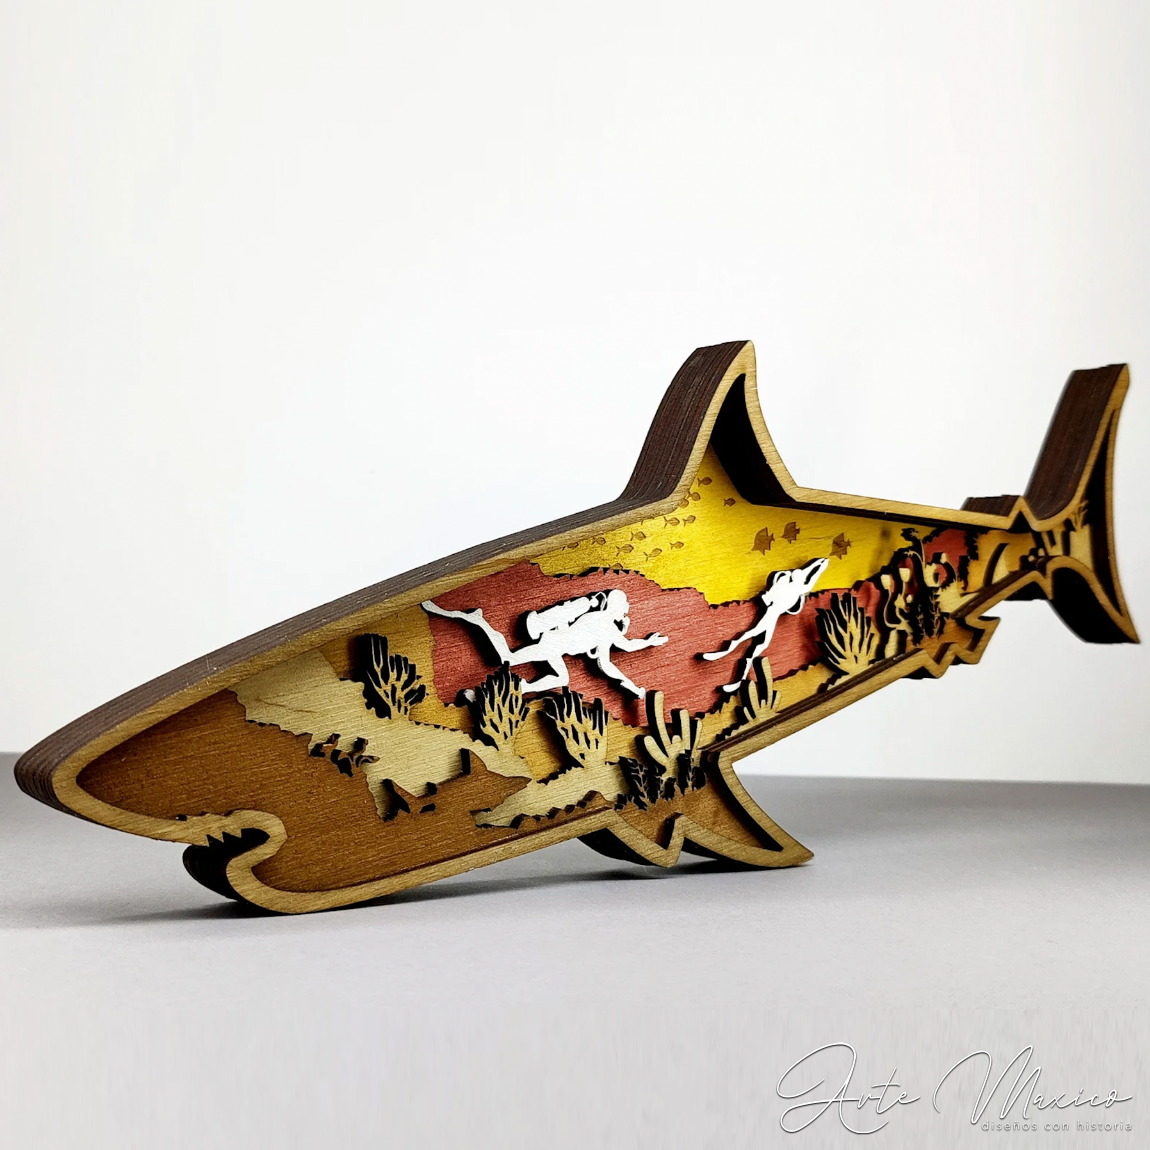 Tiburón Multicapas